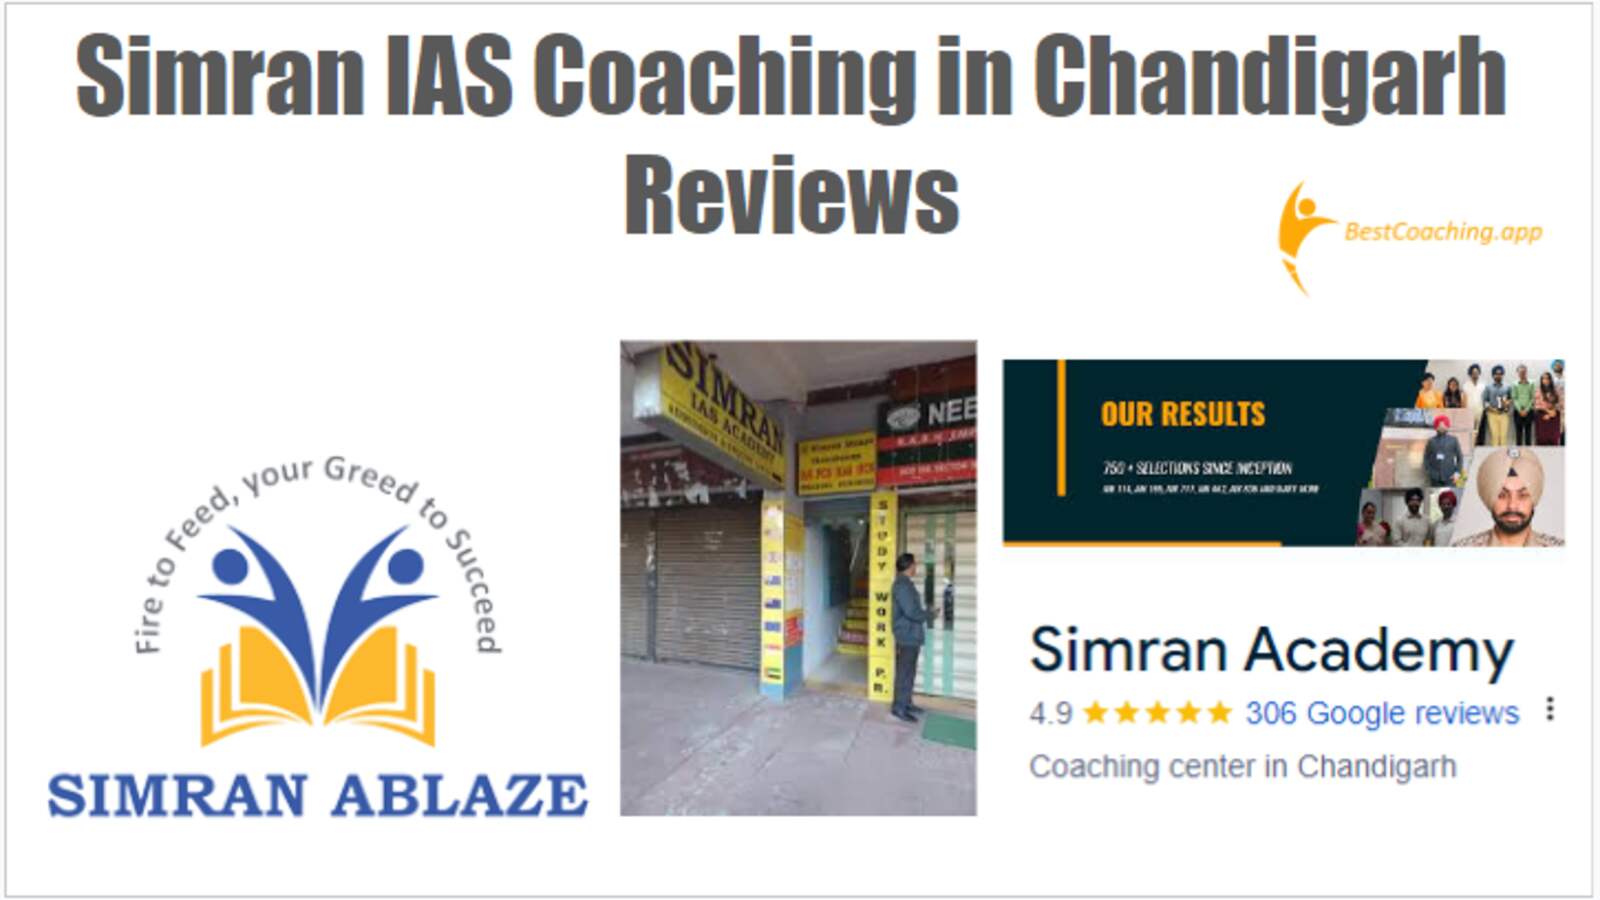 Simran IAS Coaching in Chandigarh Reviews